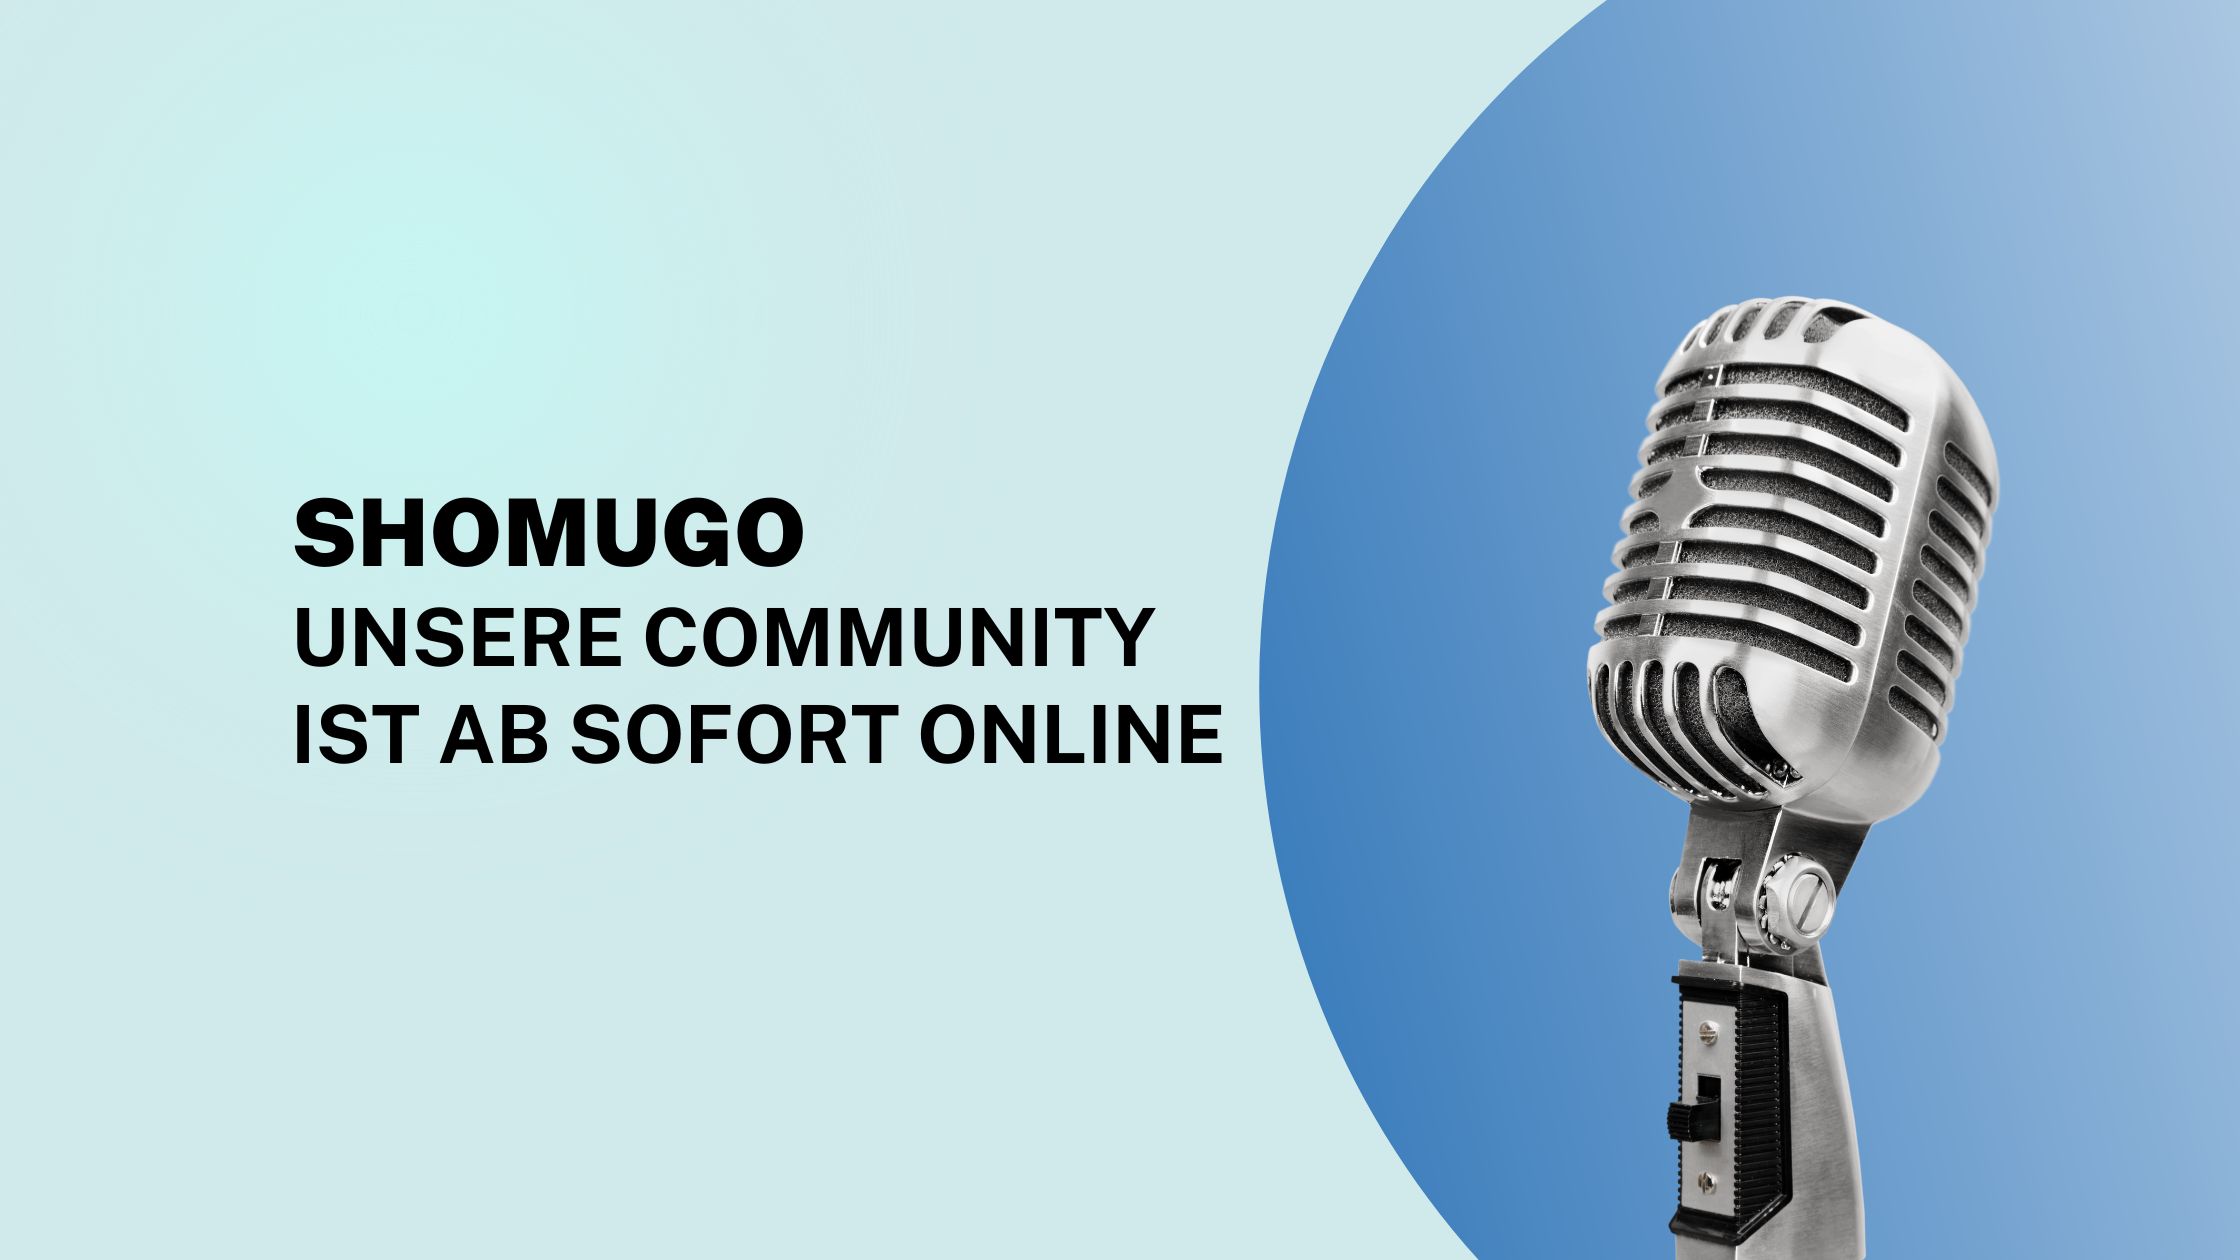 SHOMUGO - Community online